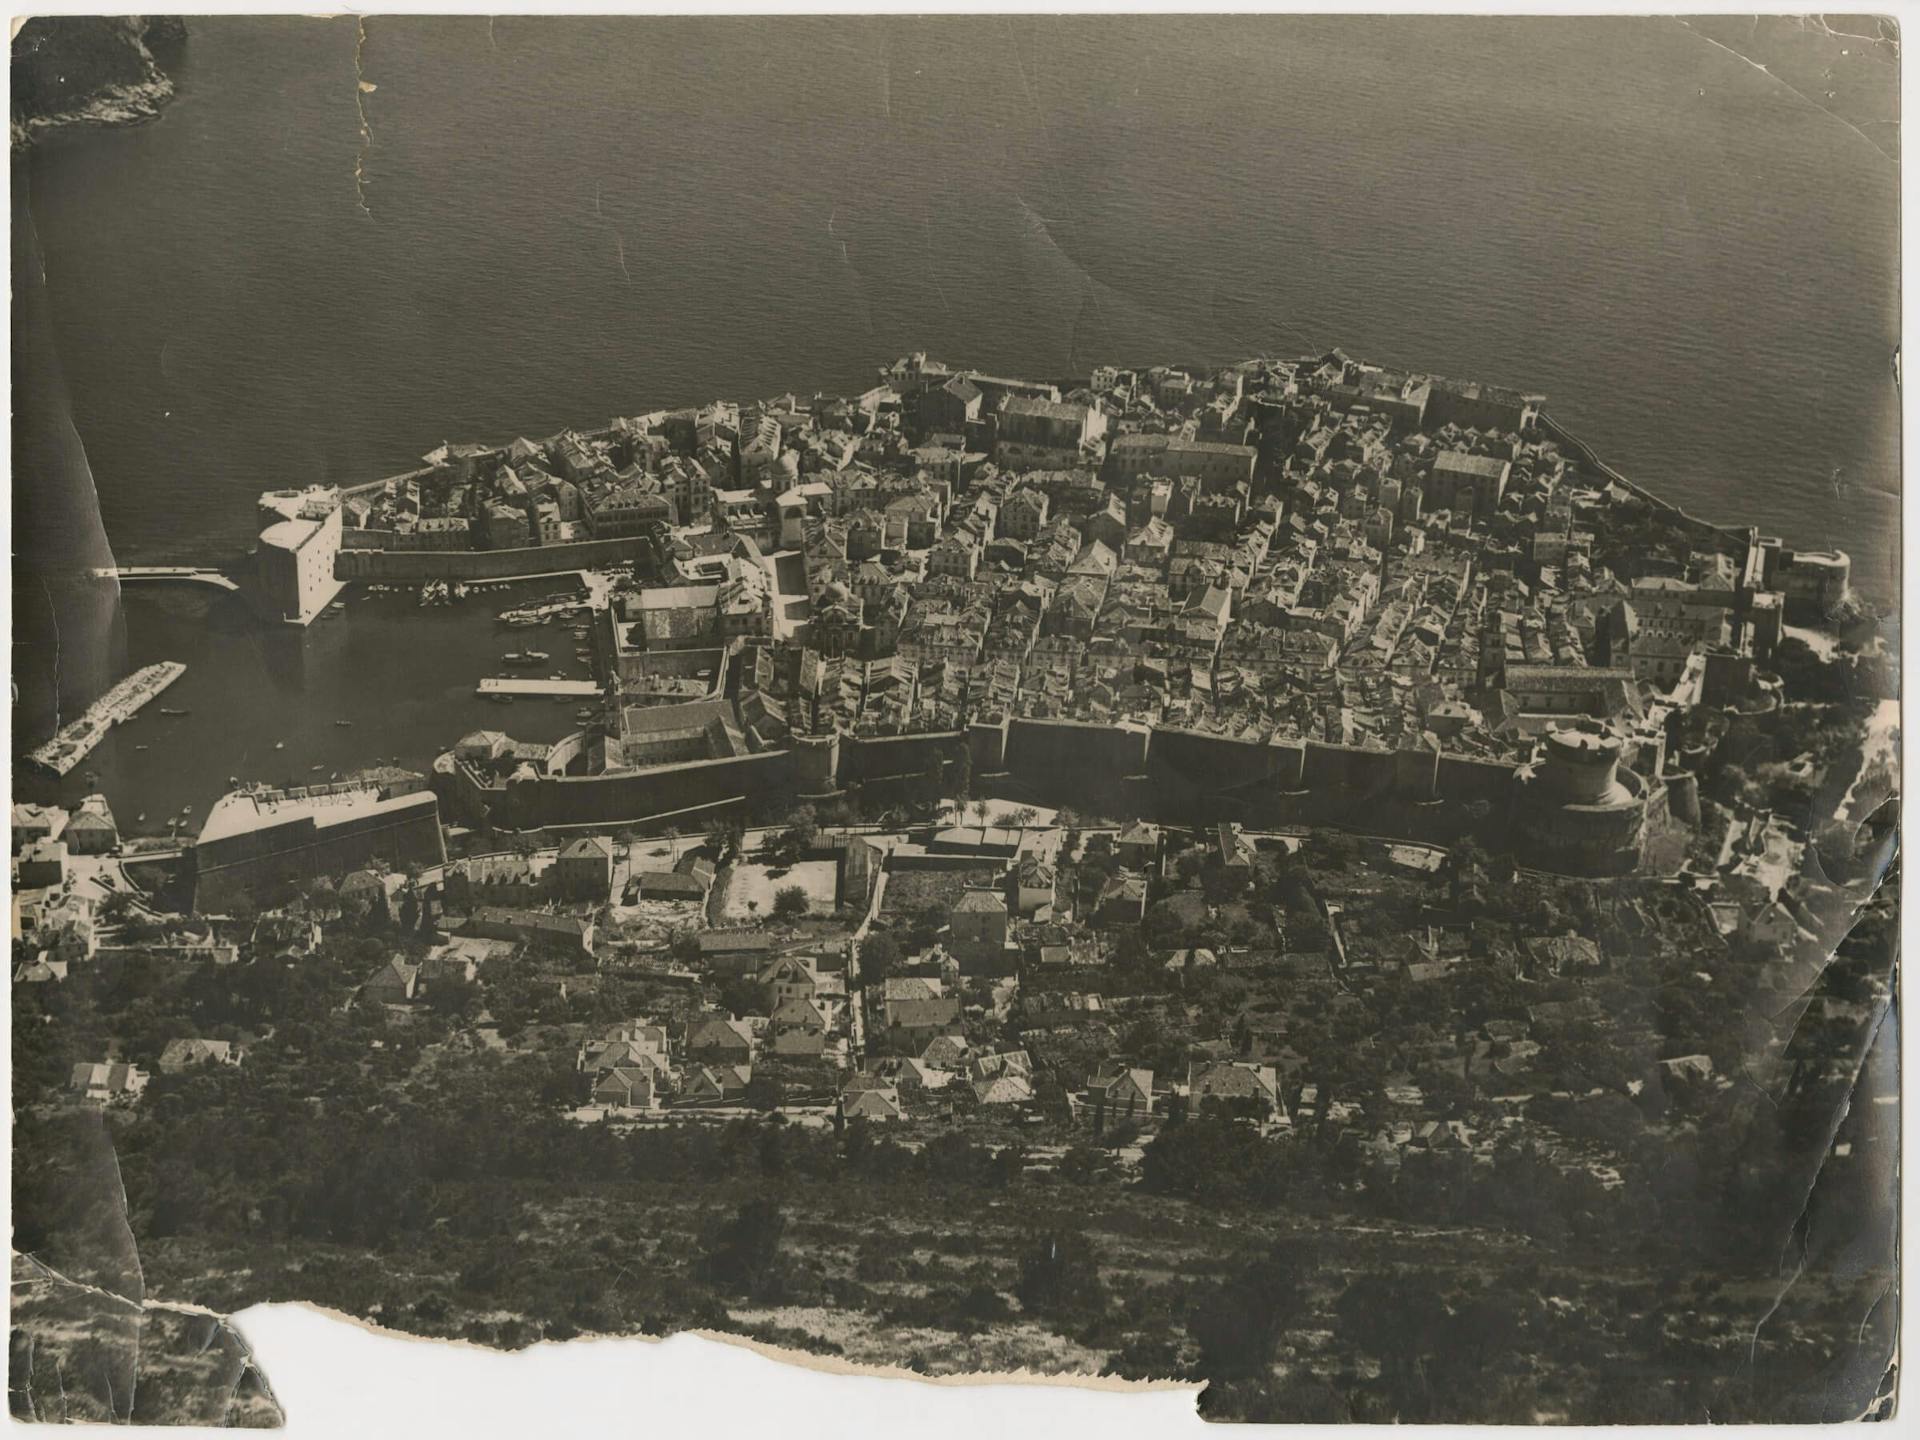 Dubrovnik 1956. Collection Het Nieuwe Instituut, TTEN f6 